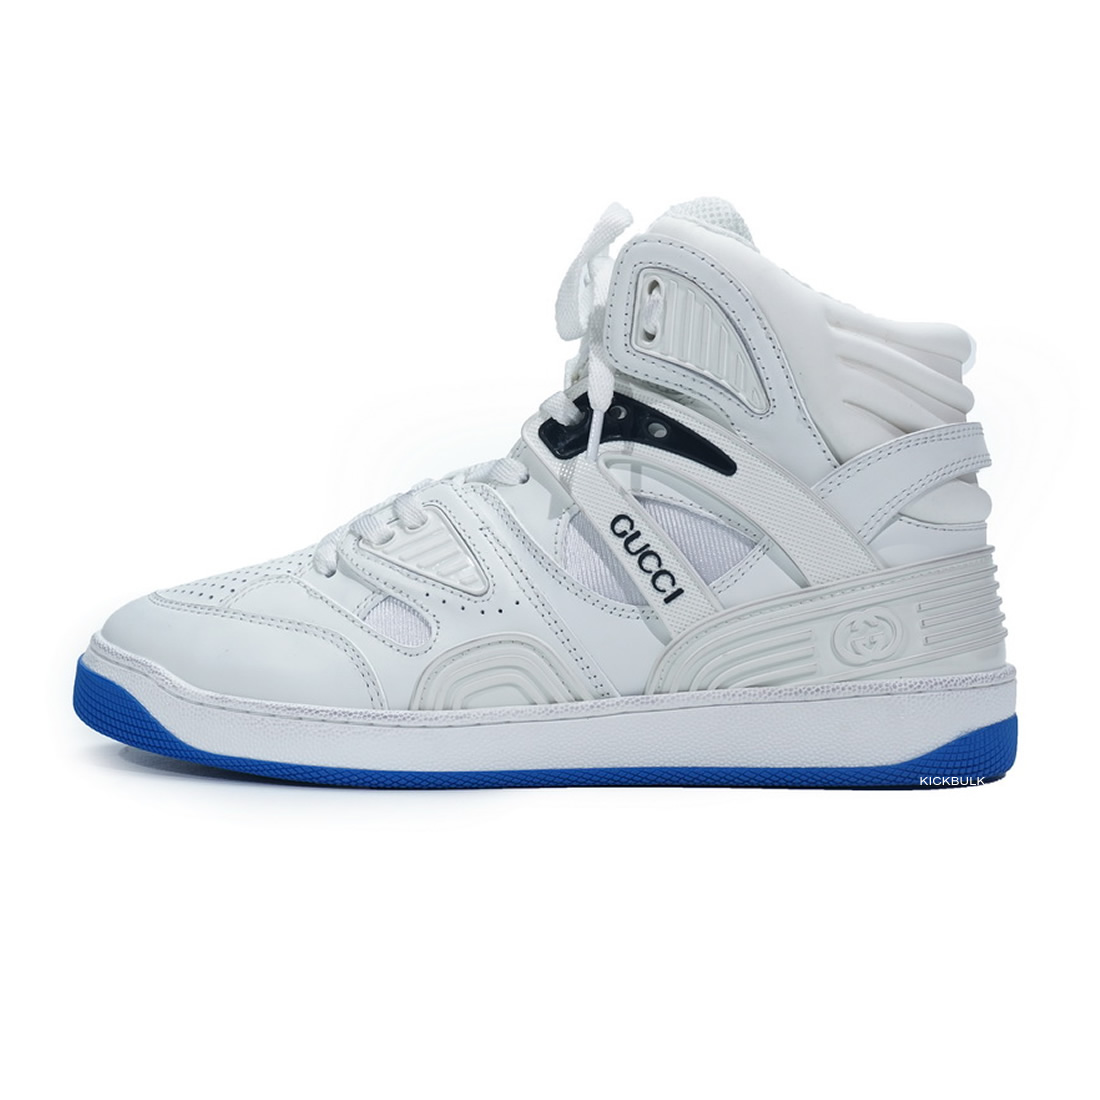 Gucci Basketball Shoes White Blue 6613032sh901072 1 - www.kickbulk.cc